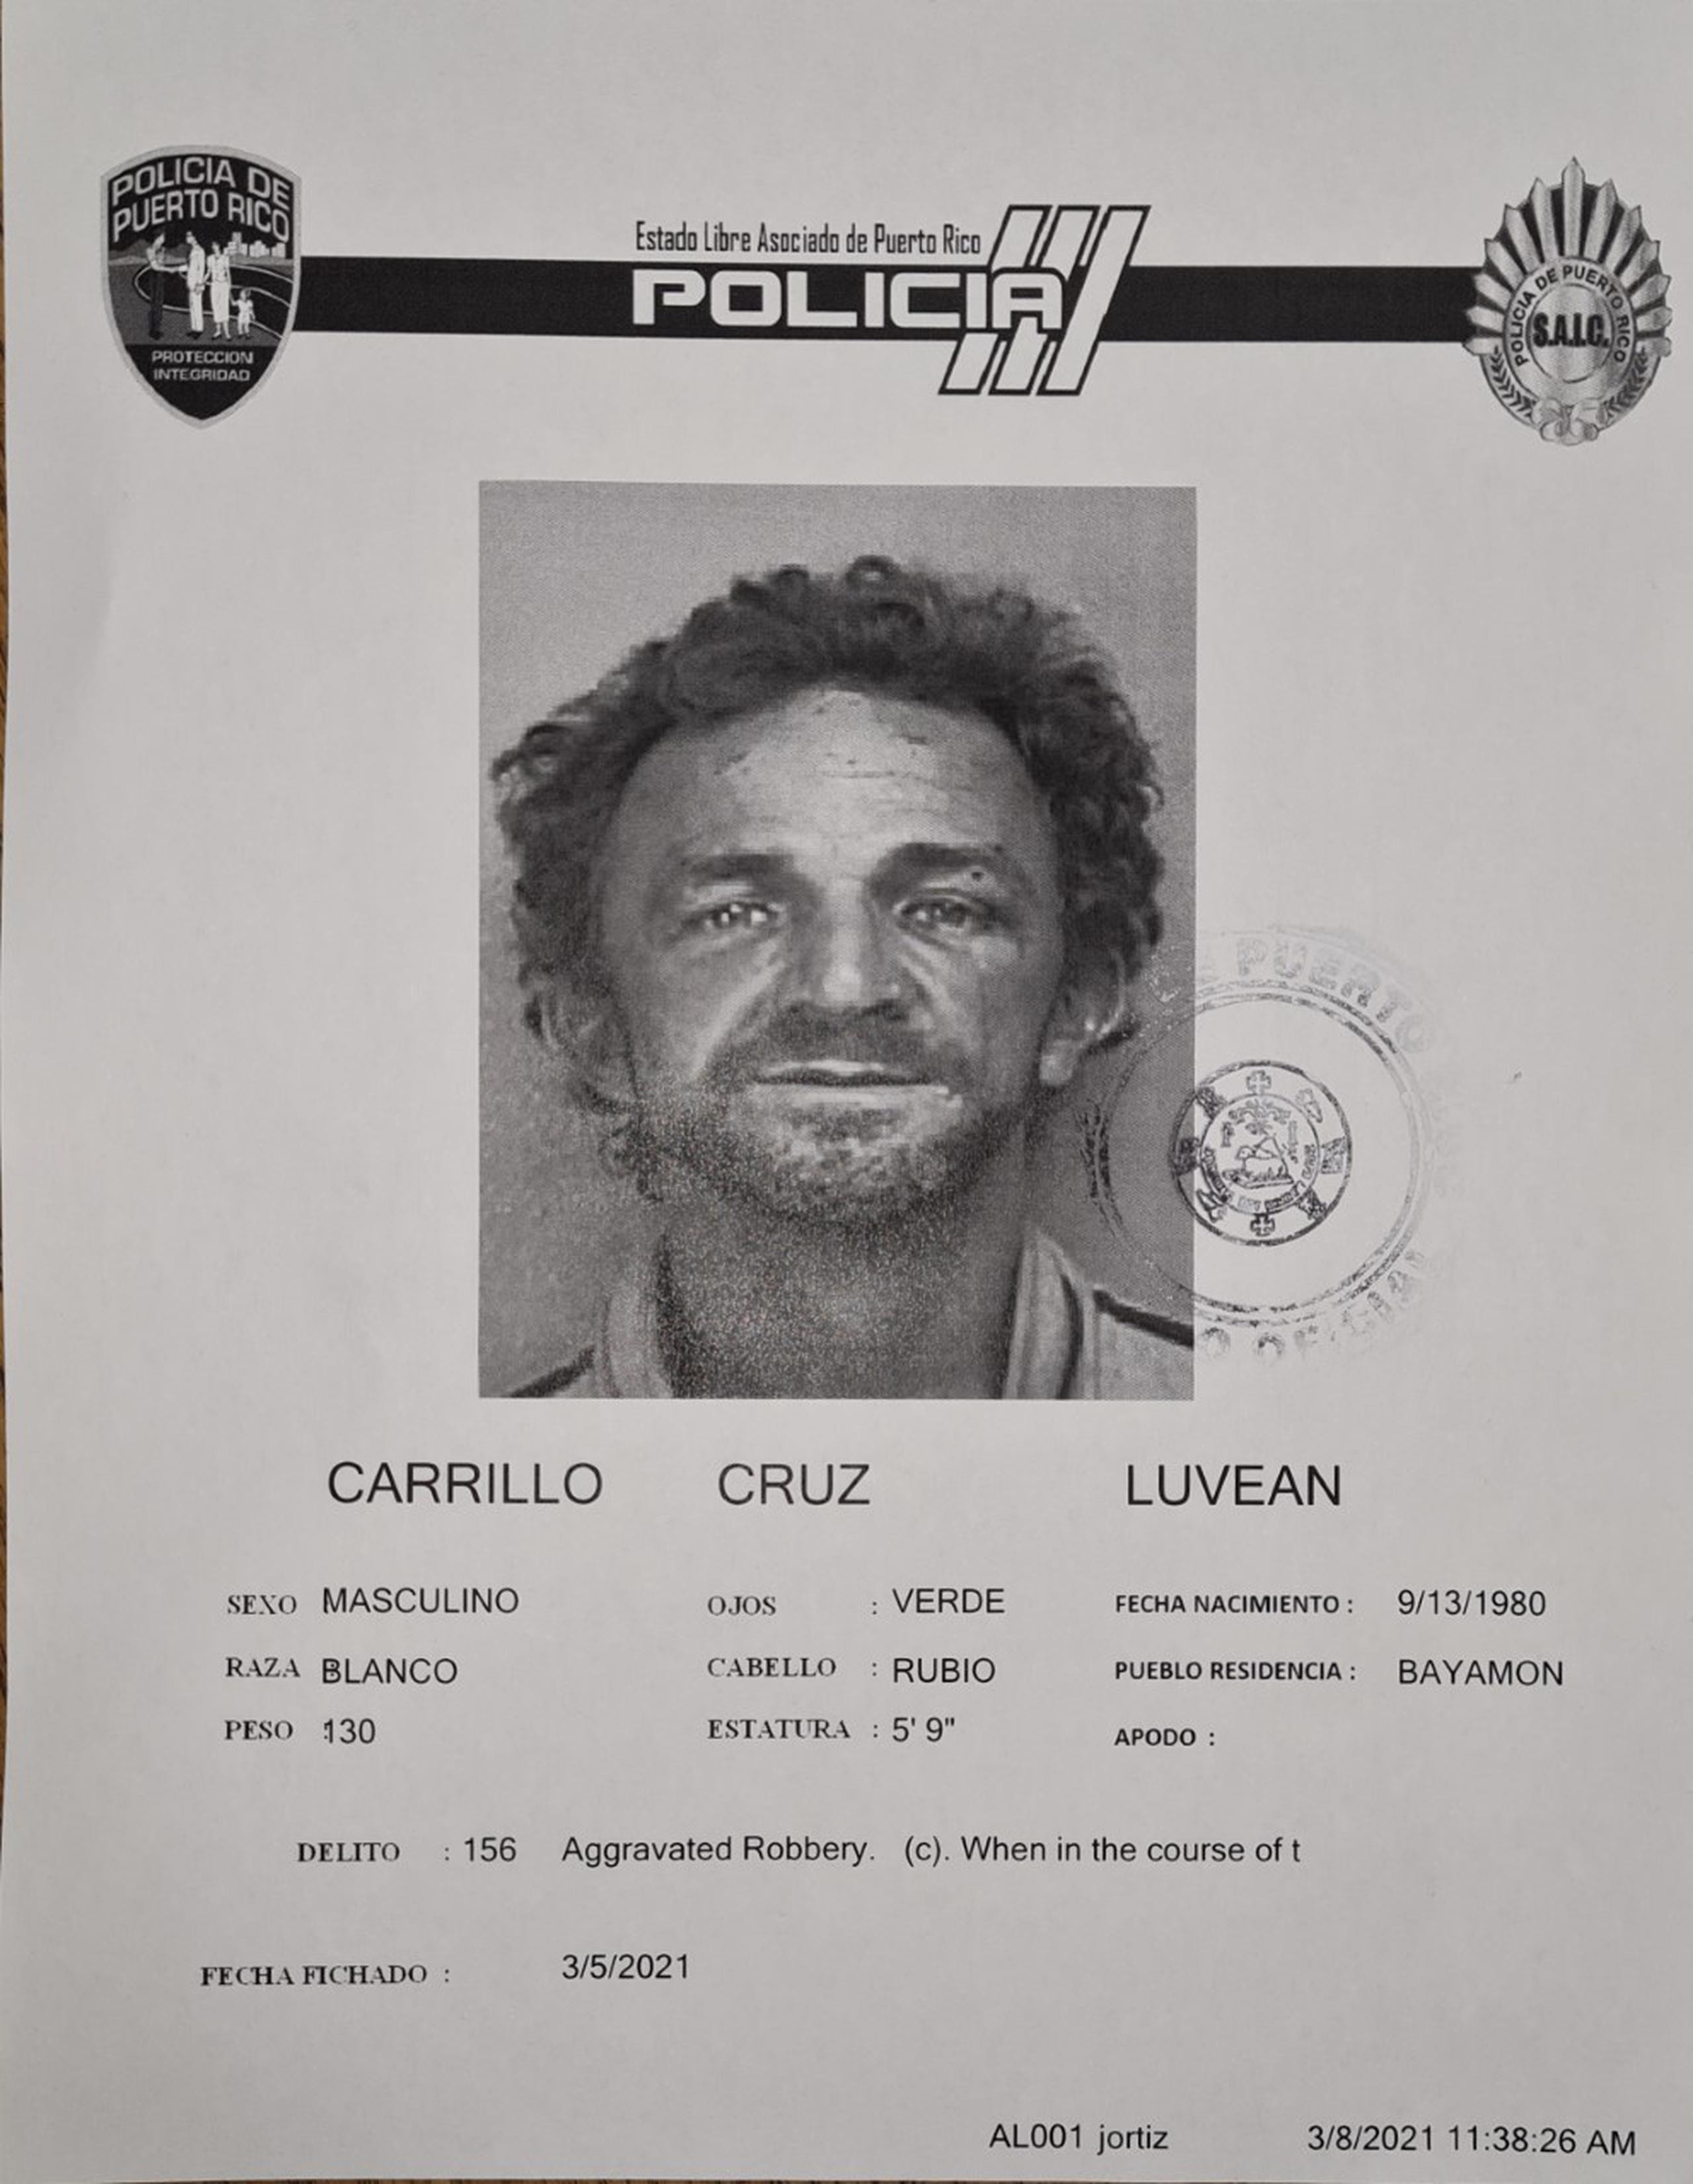 La jueza Lorraine Biaggi, del Tribunal de Bayamón, determinó causa para arresto contra Luvean Carrillo Cruz, de 40 años, por los delitos de robo y agresión contra su progenitora y le señaló una fianza de $10,000.